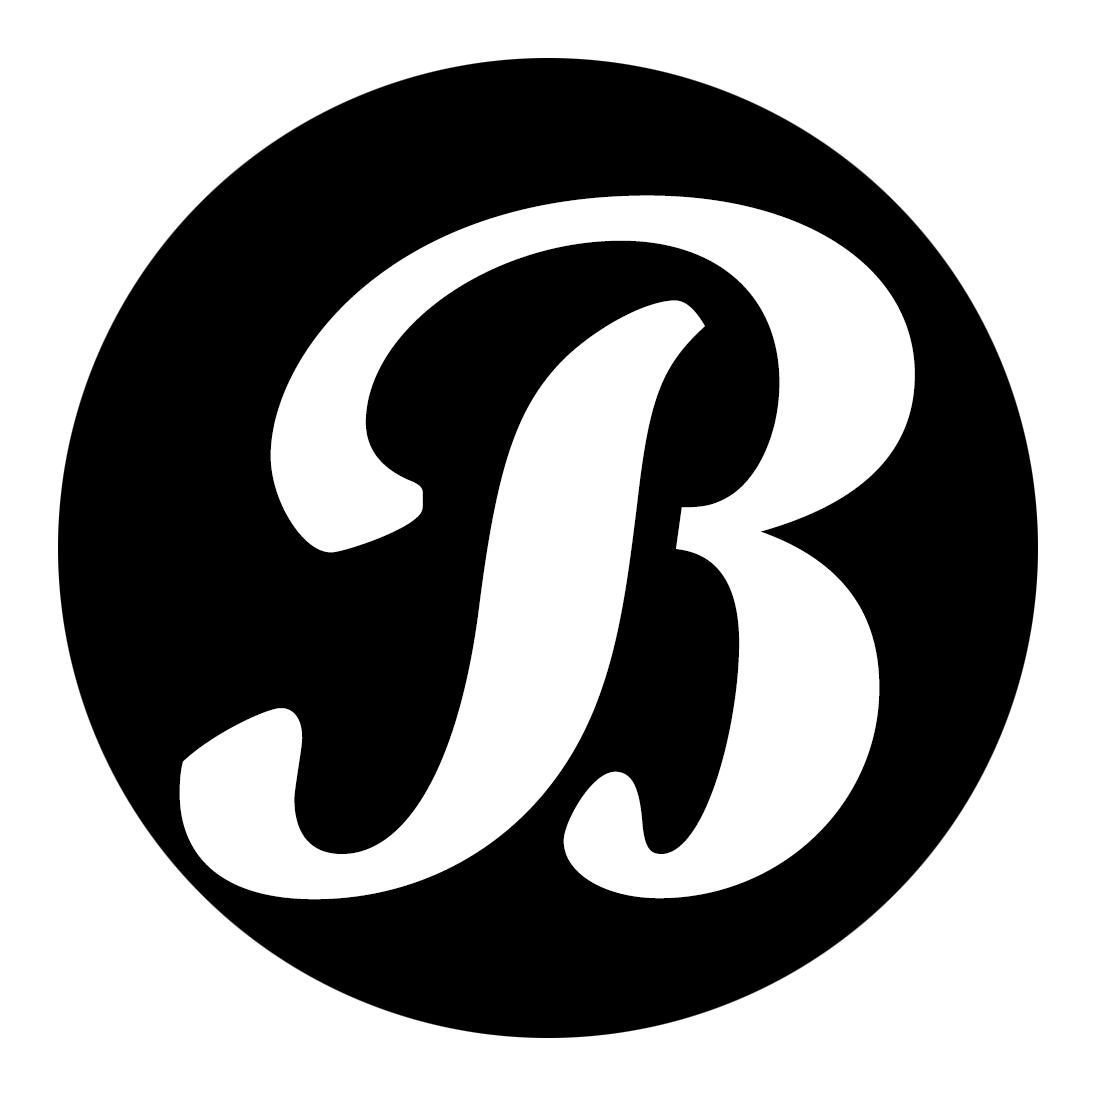 字母b创意图形图片